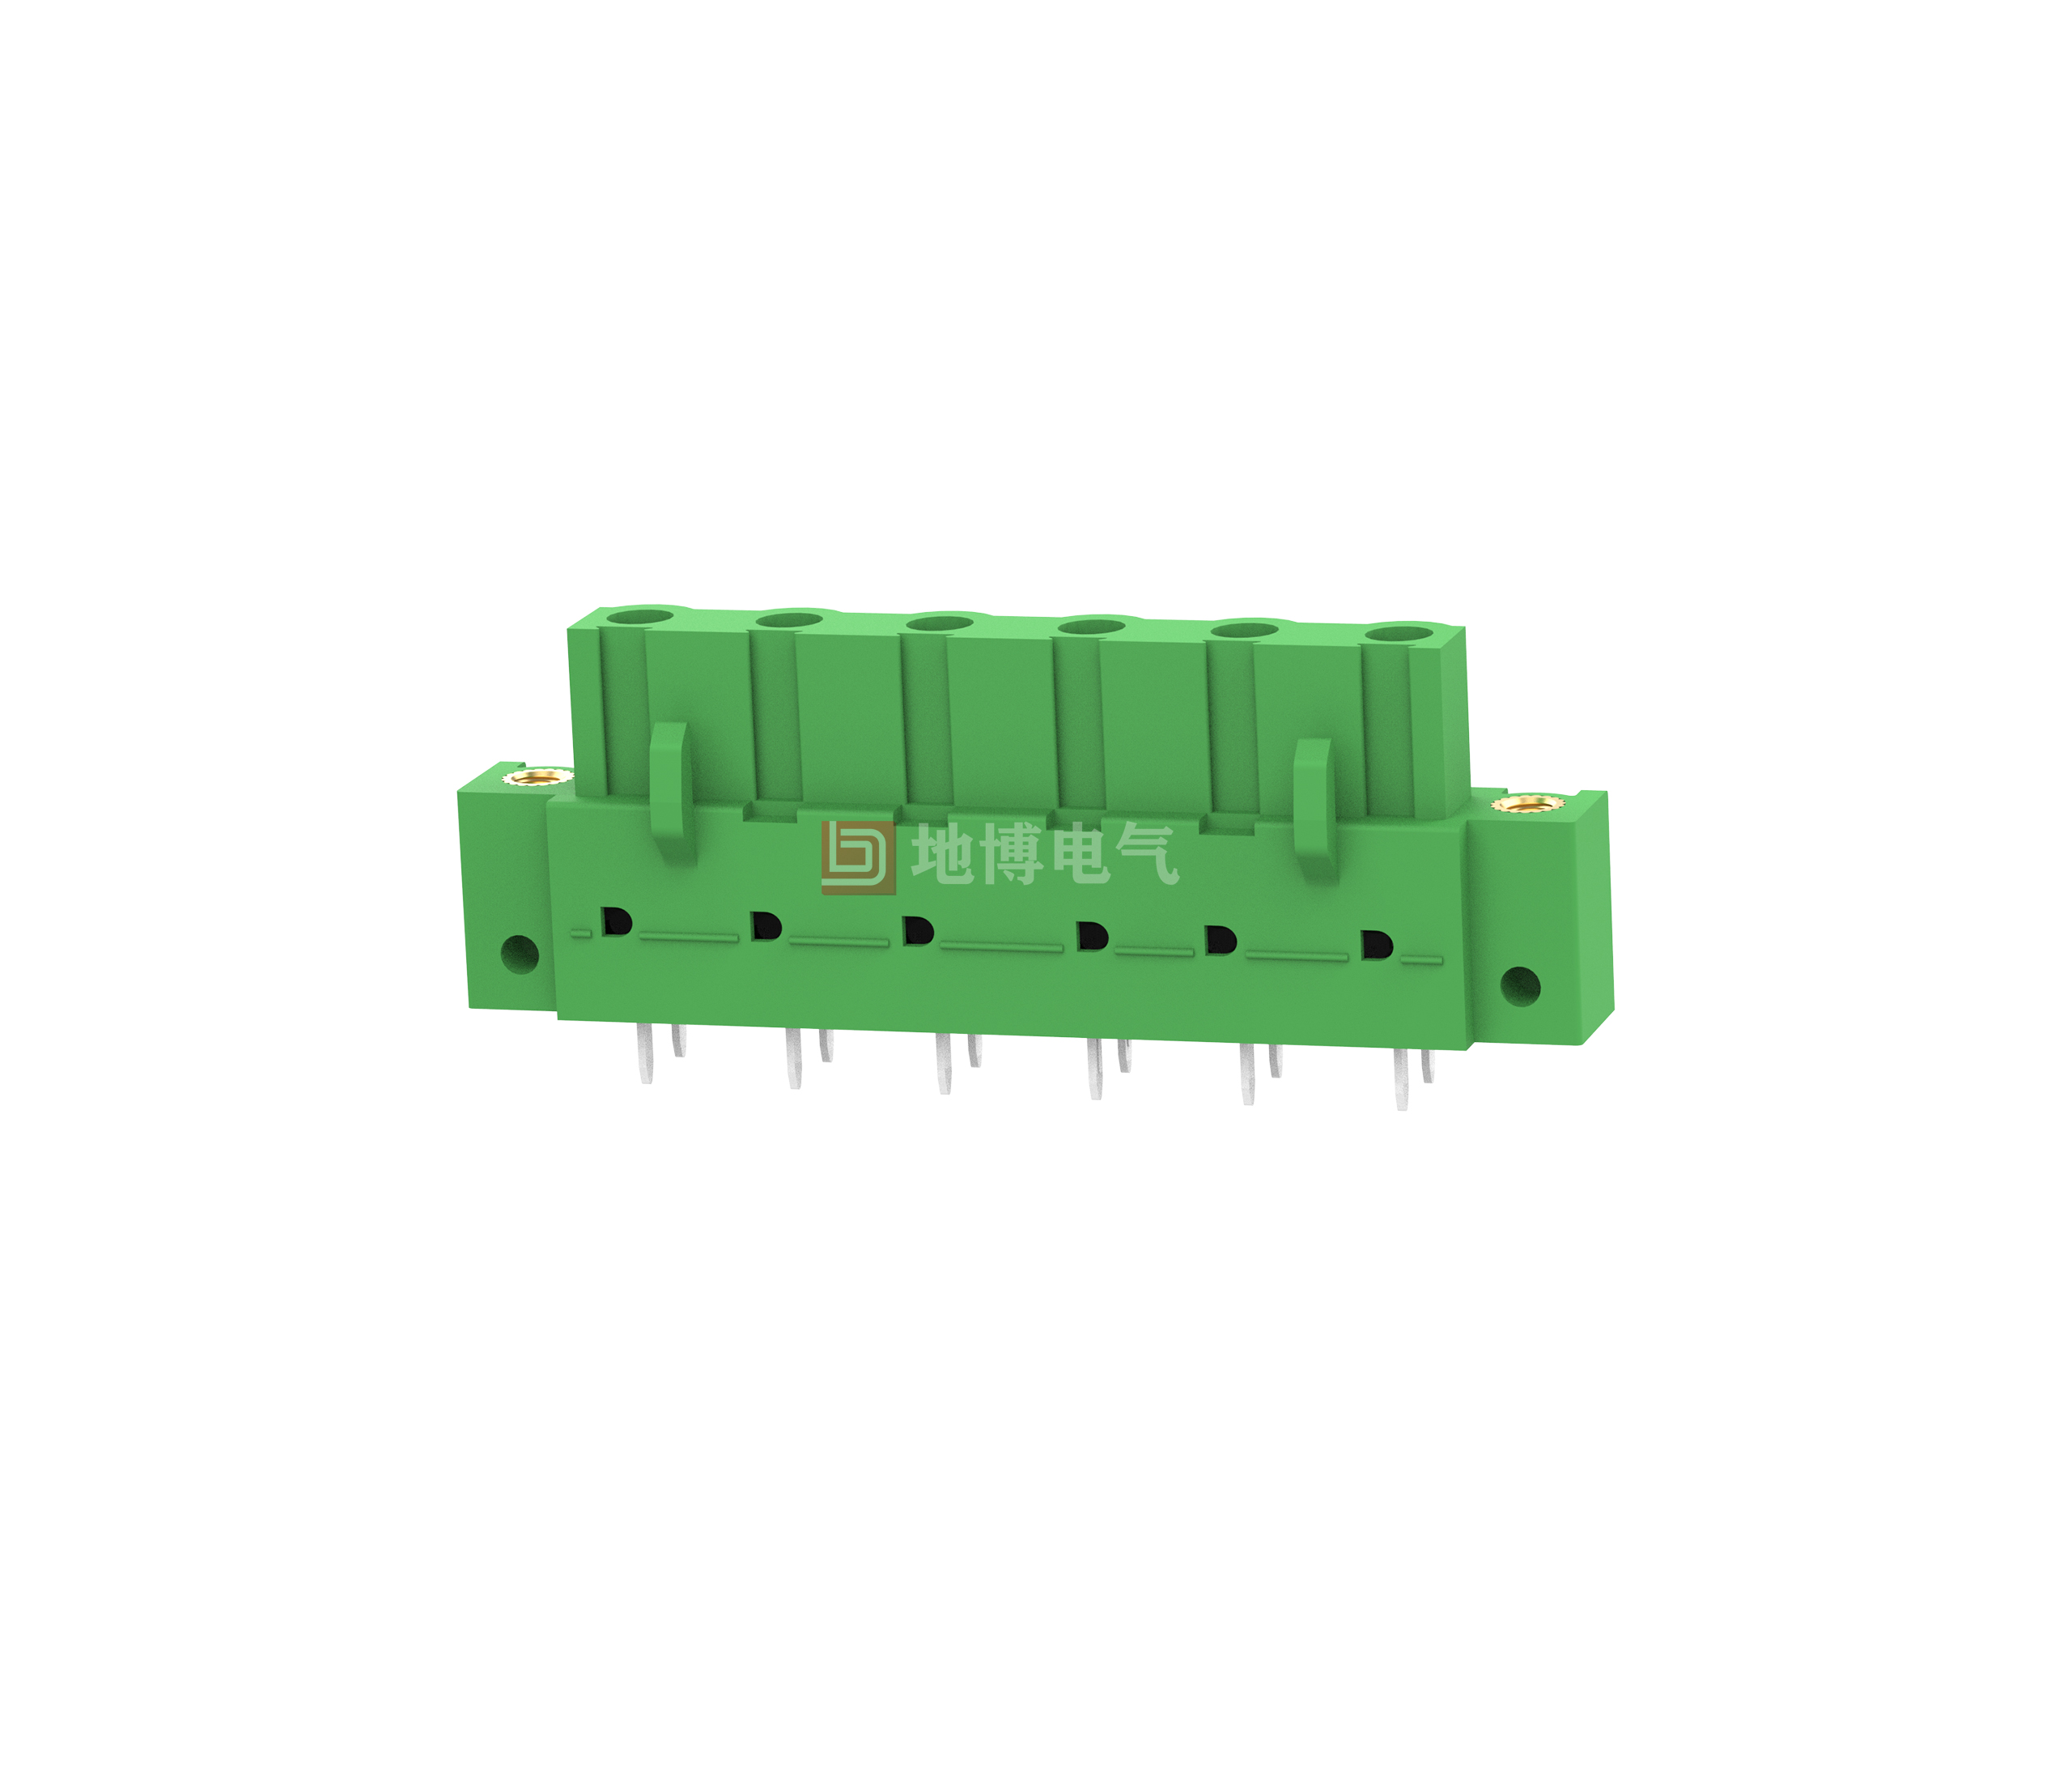 PCB socket DB2EBM-7.62